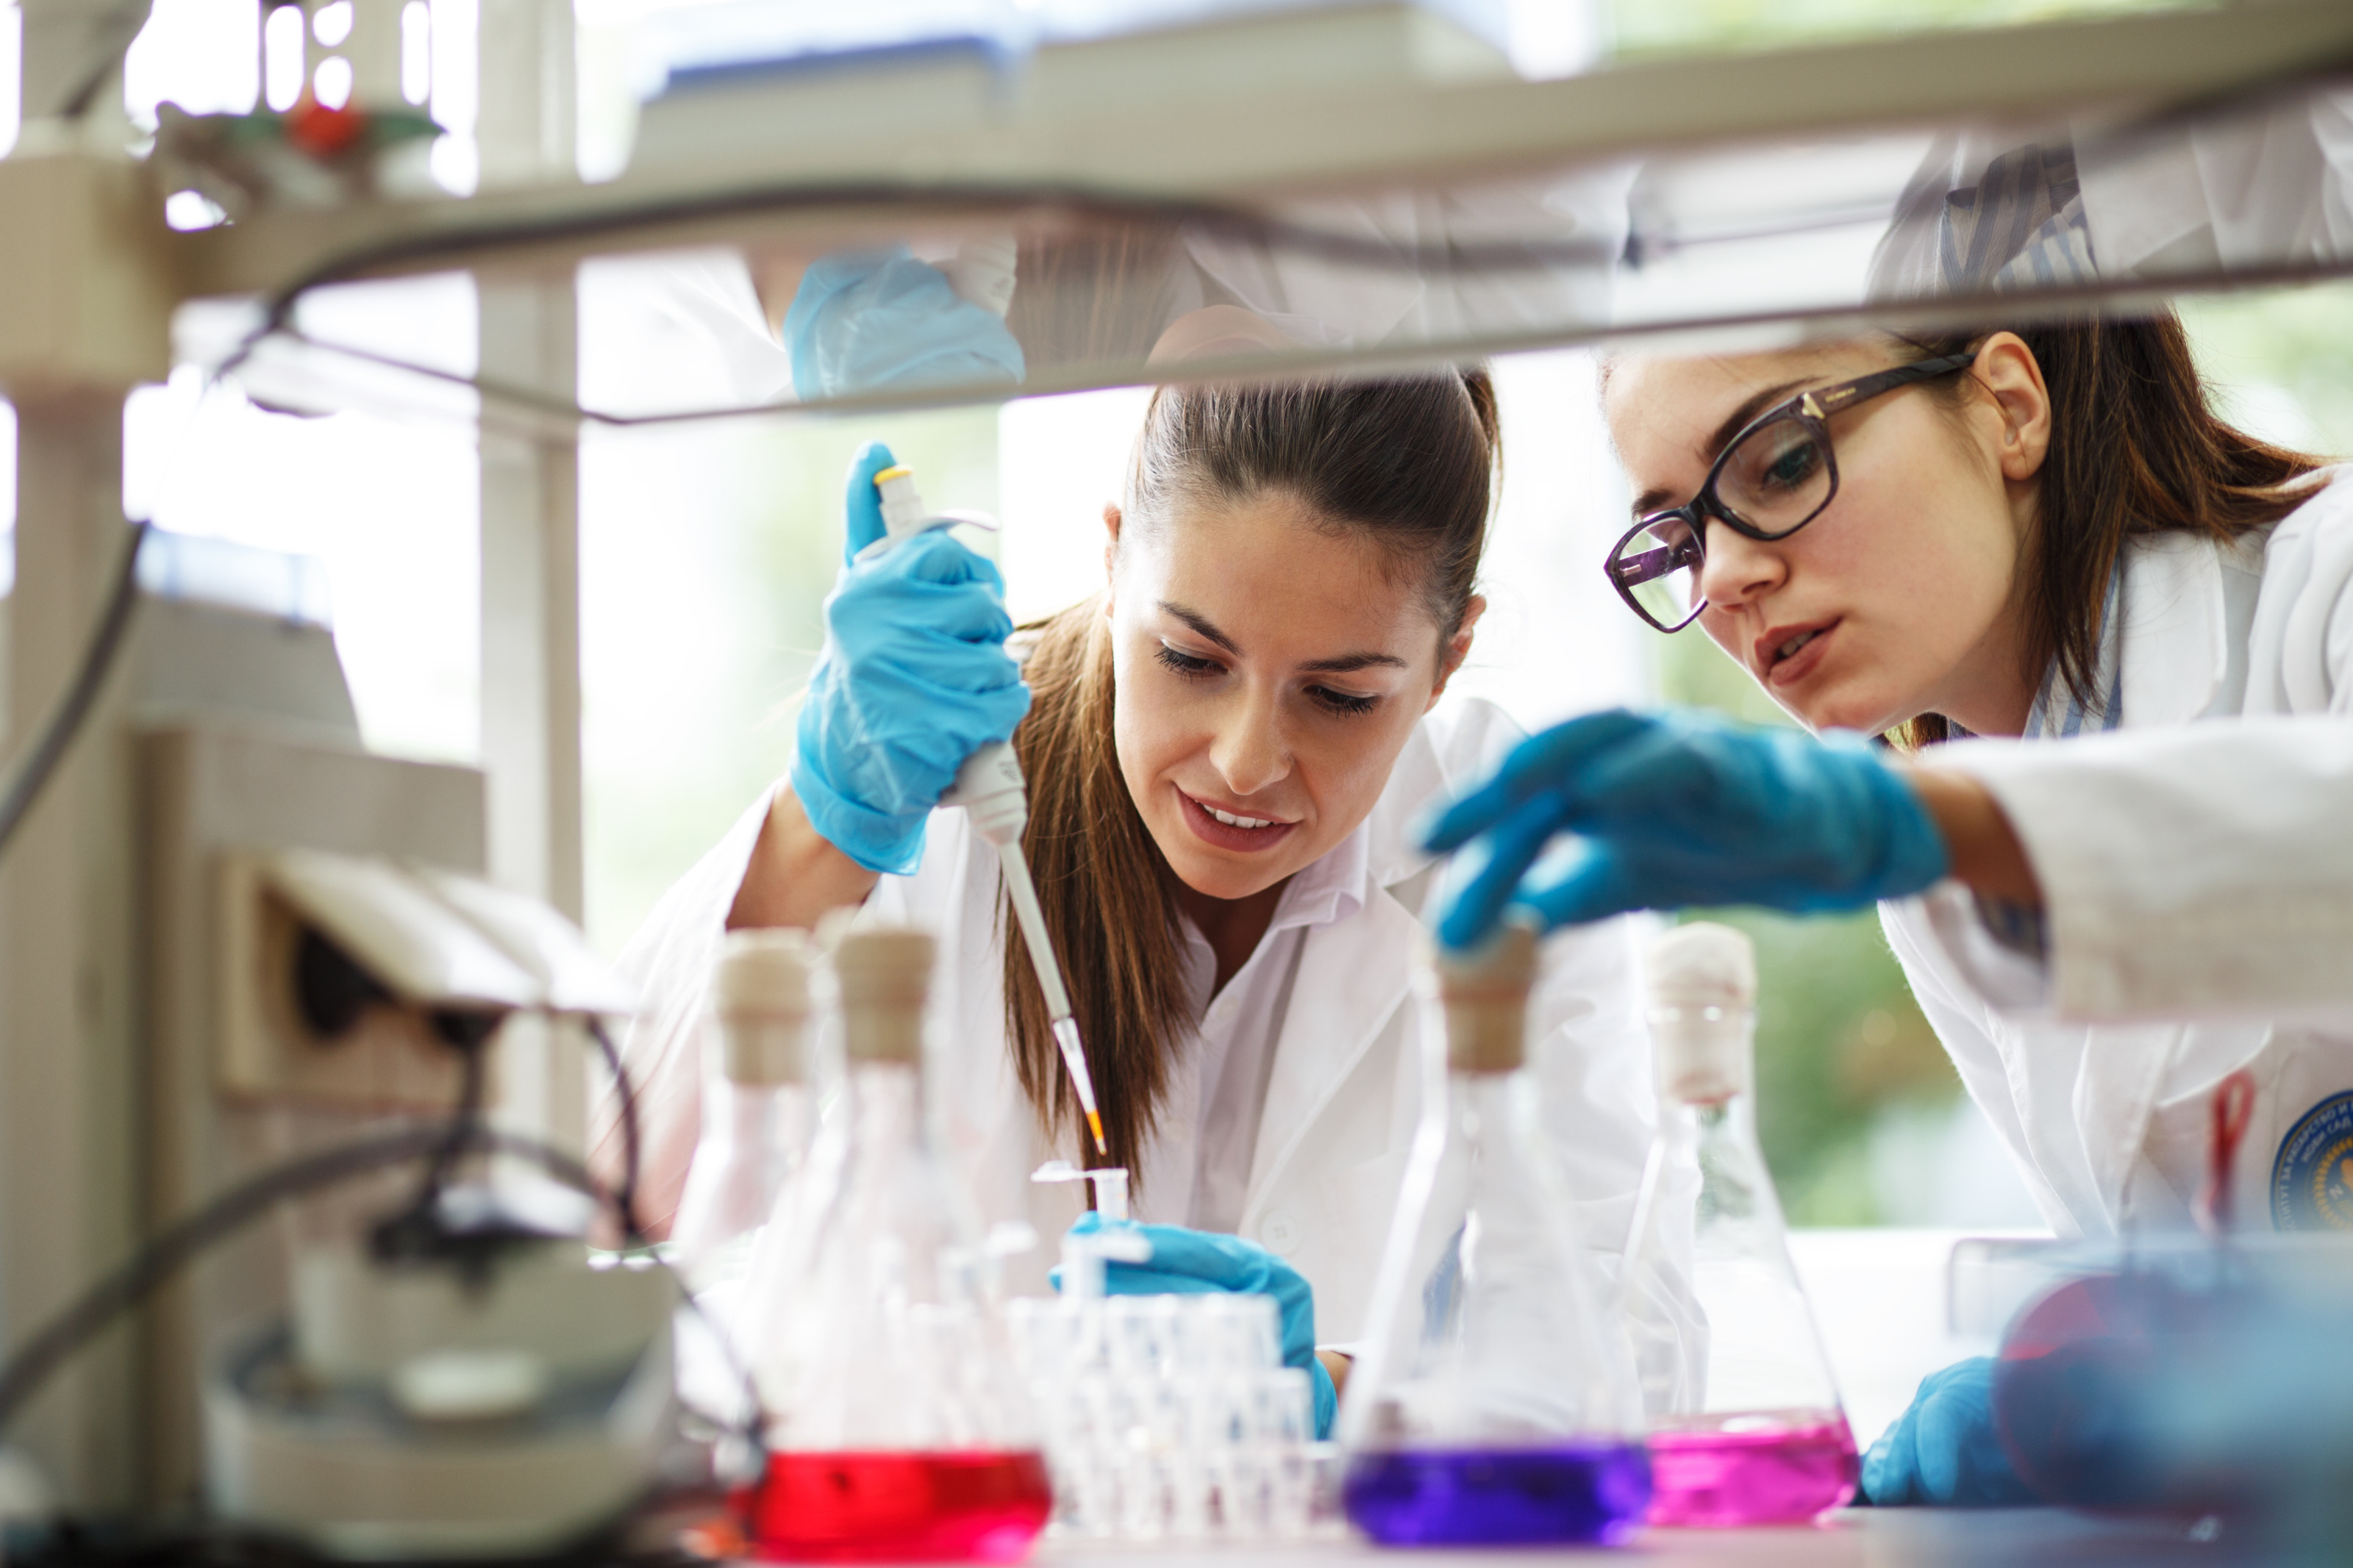 Zwei Personen mit blauen Gummihandschuhen in Labor, eine Person füllt mit Füllstab Flüssigkeit in Eprouvette, andere Person greift nach Reagenzglas mit violetter Flüssigkeit